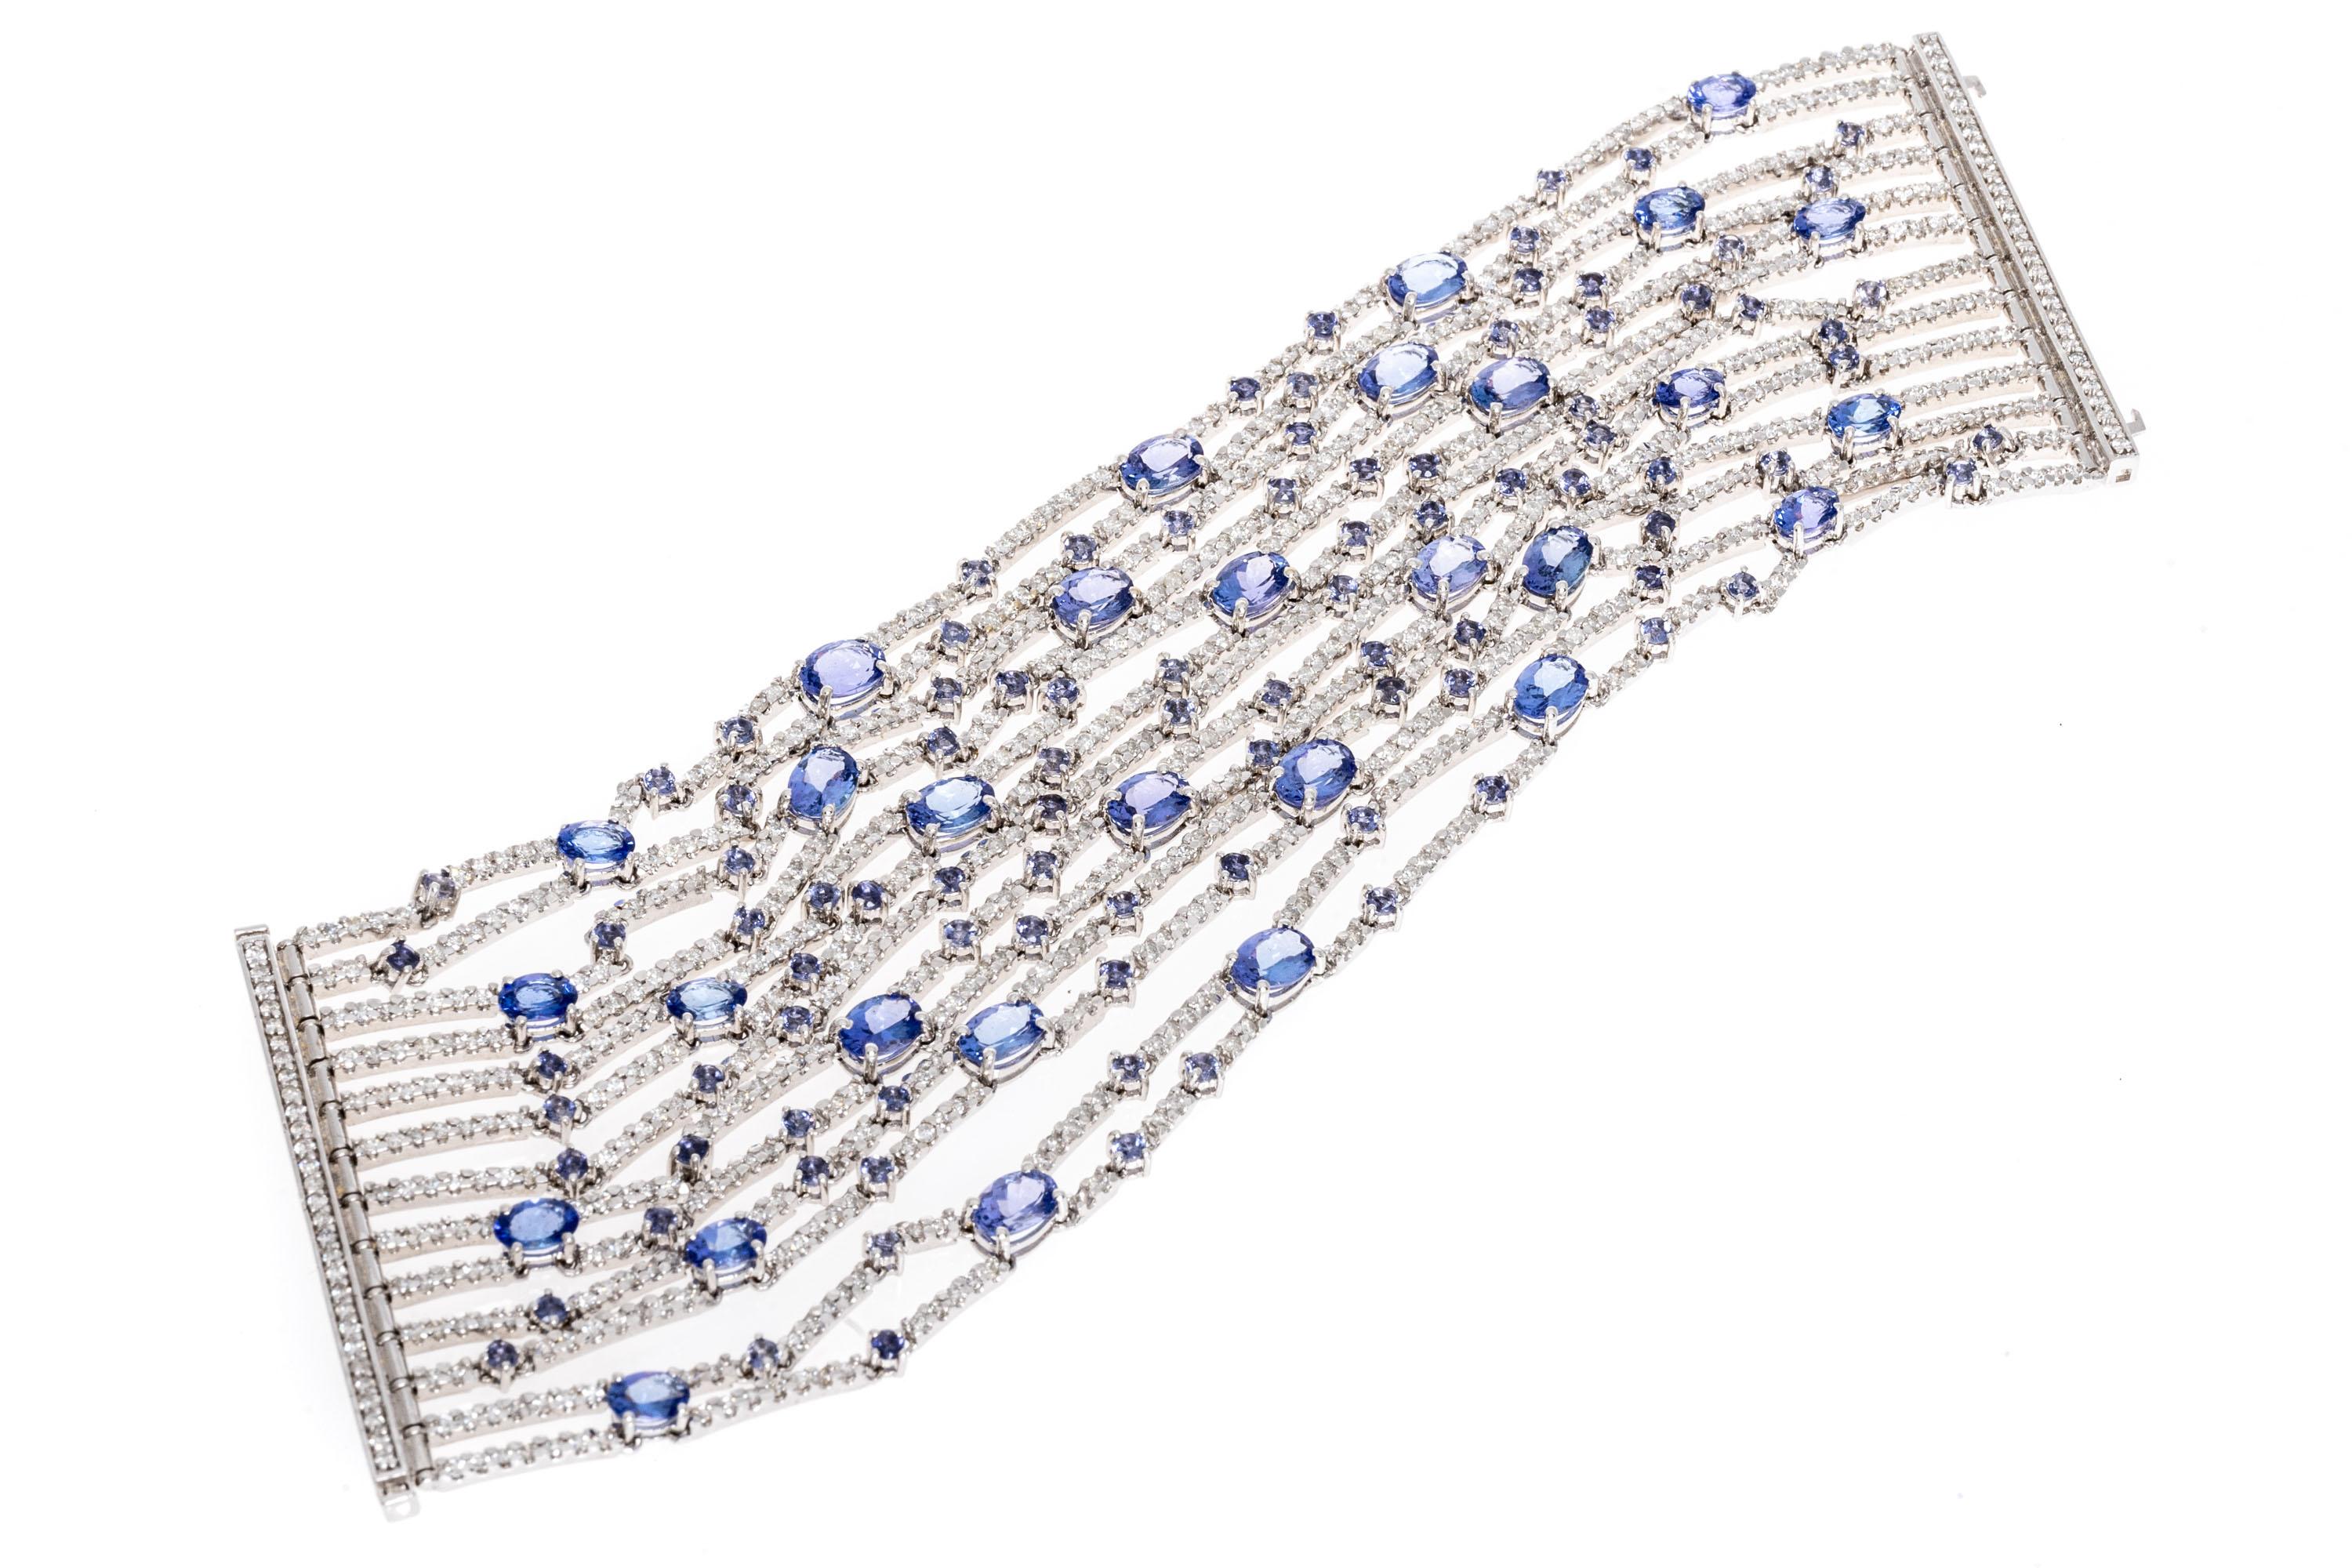 bracelet en or blanc 18k. Ce bracelet absolument spectaculaire est un style flexible à lignes multiples, englobant la tanzanite et les diamants. 
Les pierres de tanzanite sont composées de plusieurs variations. Les petites pierres rondes à facettes